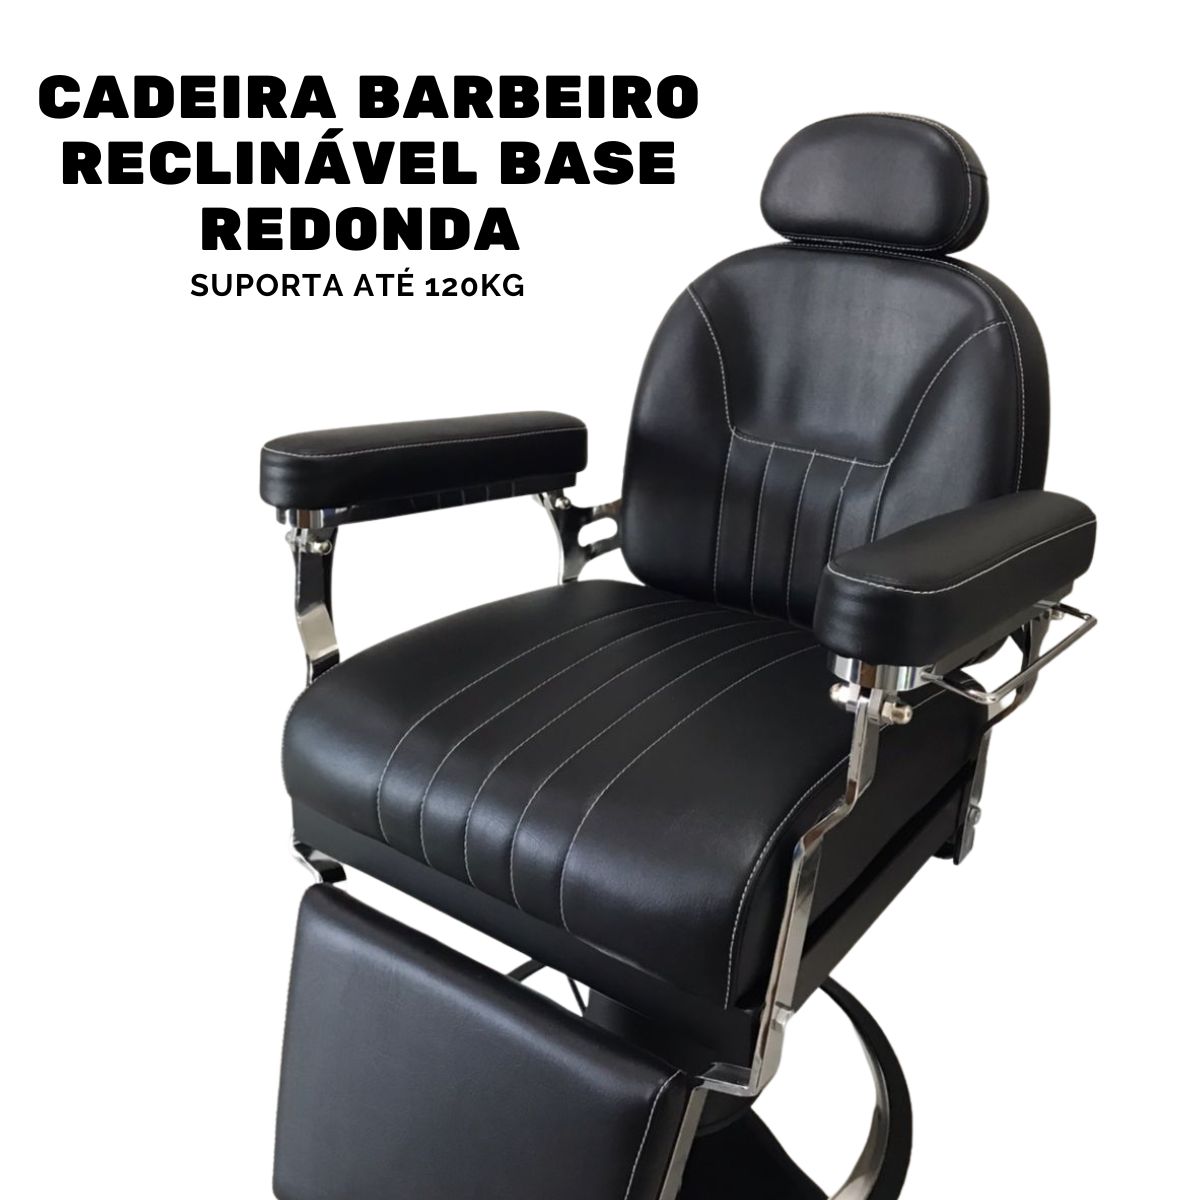 Cadeira Barbeiro Reclinável Base Redonda IWCBRBR